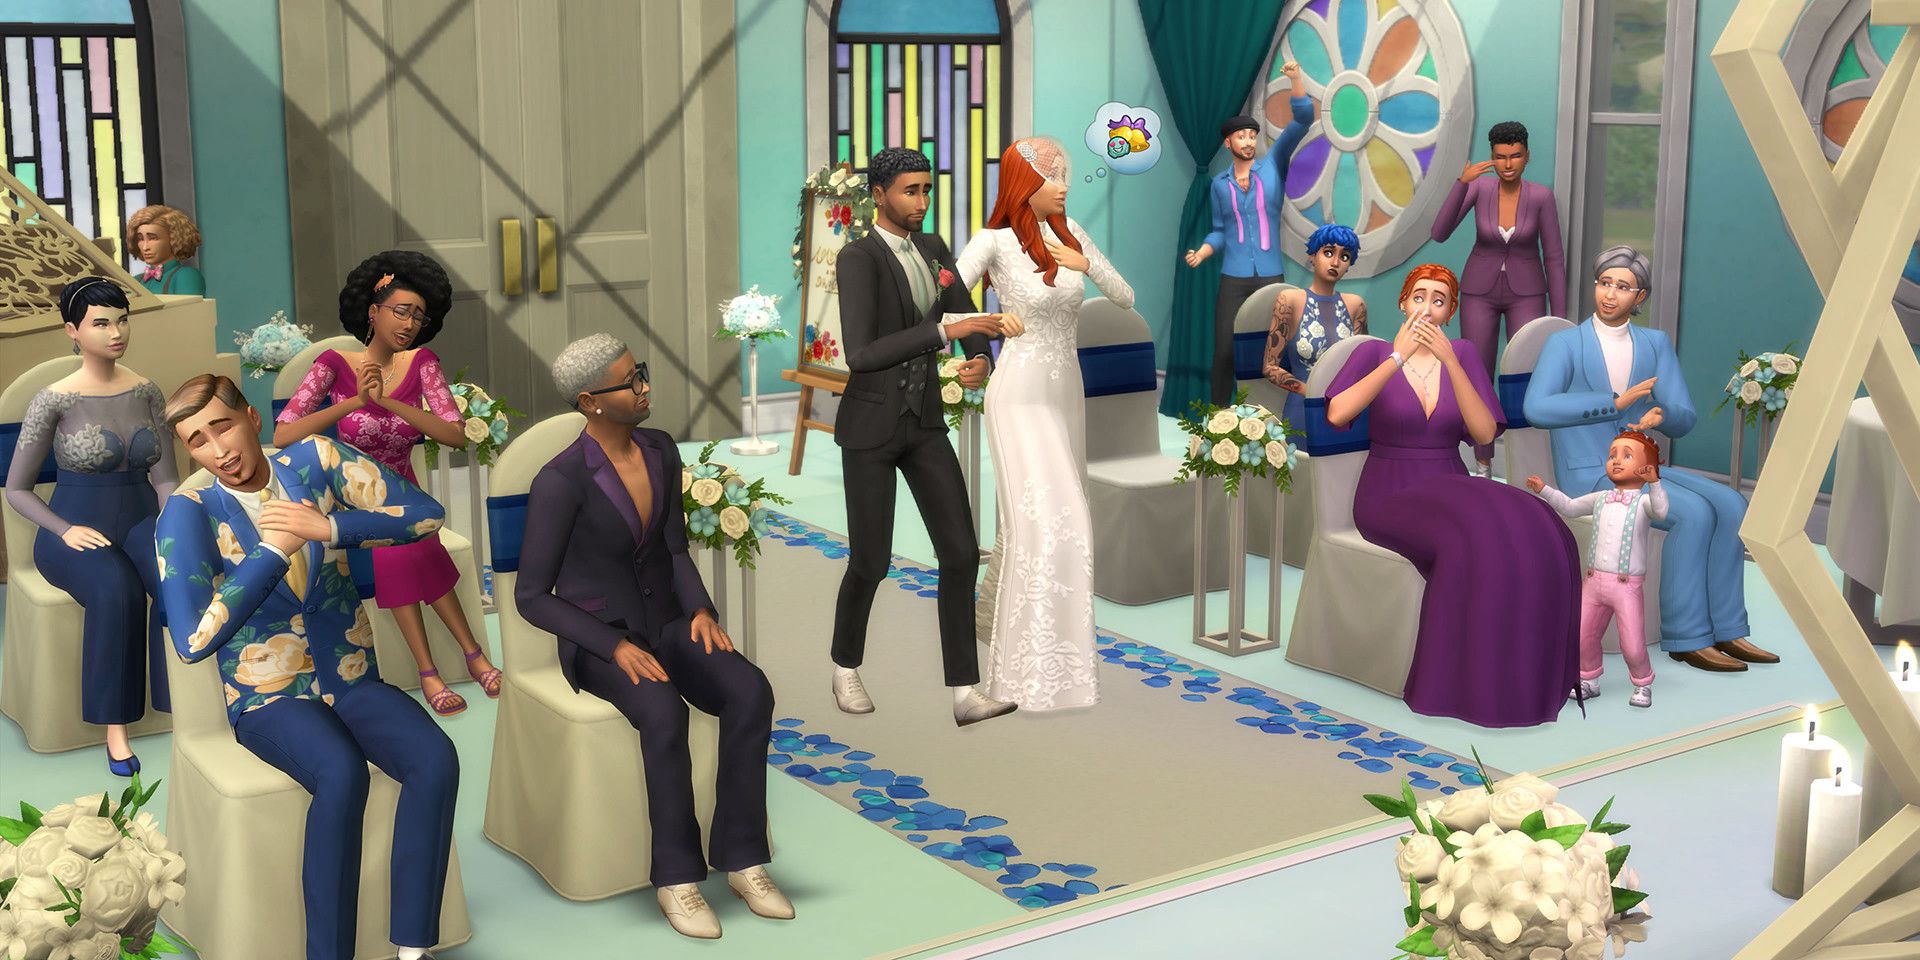 Sims 4 Wedding Stories Pack obtiene numerosas correcciones en la nueva actualización